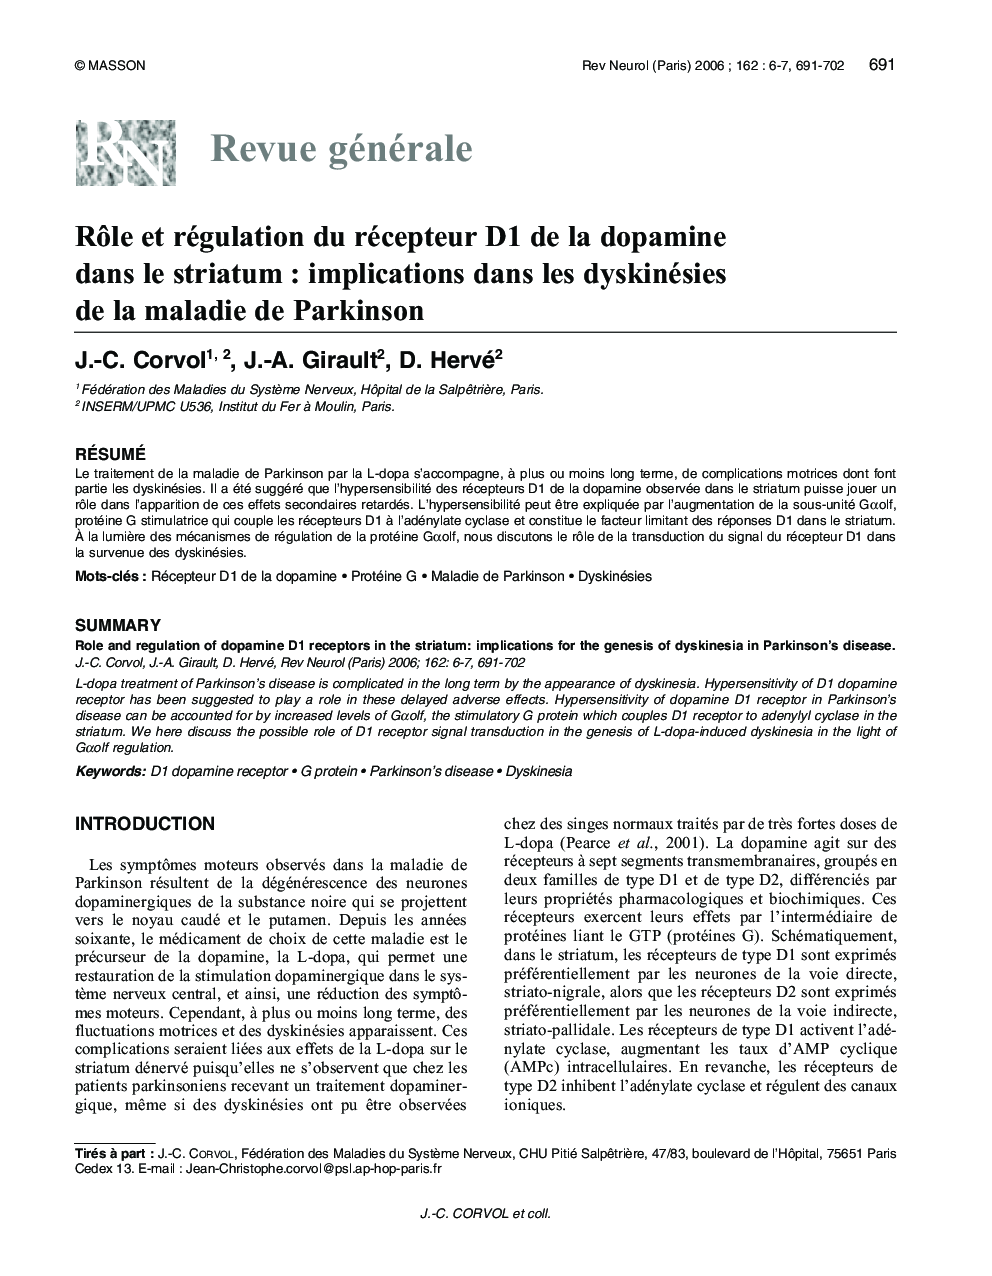 RÃ´le et régulation du récepteur D1 de la dopamine dans le striatum : implications dans les dyskinésies de la maladie de Parkinson